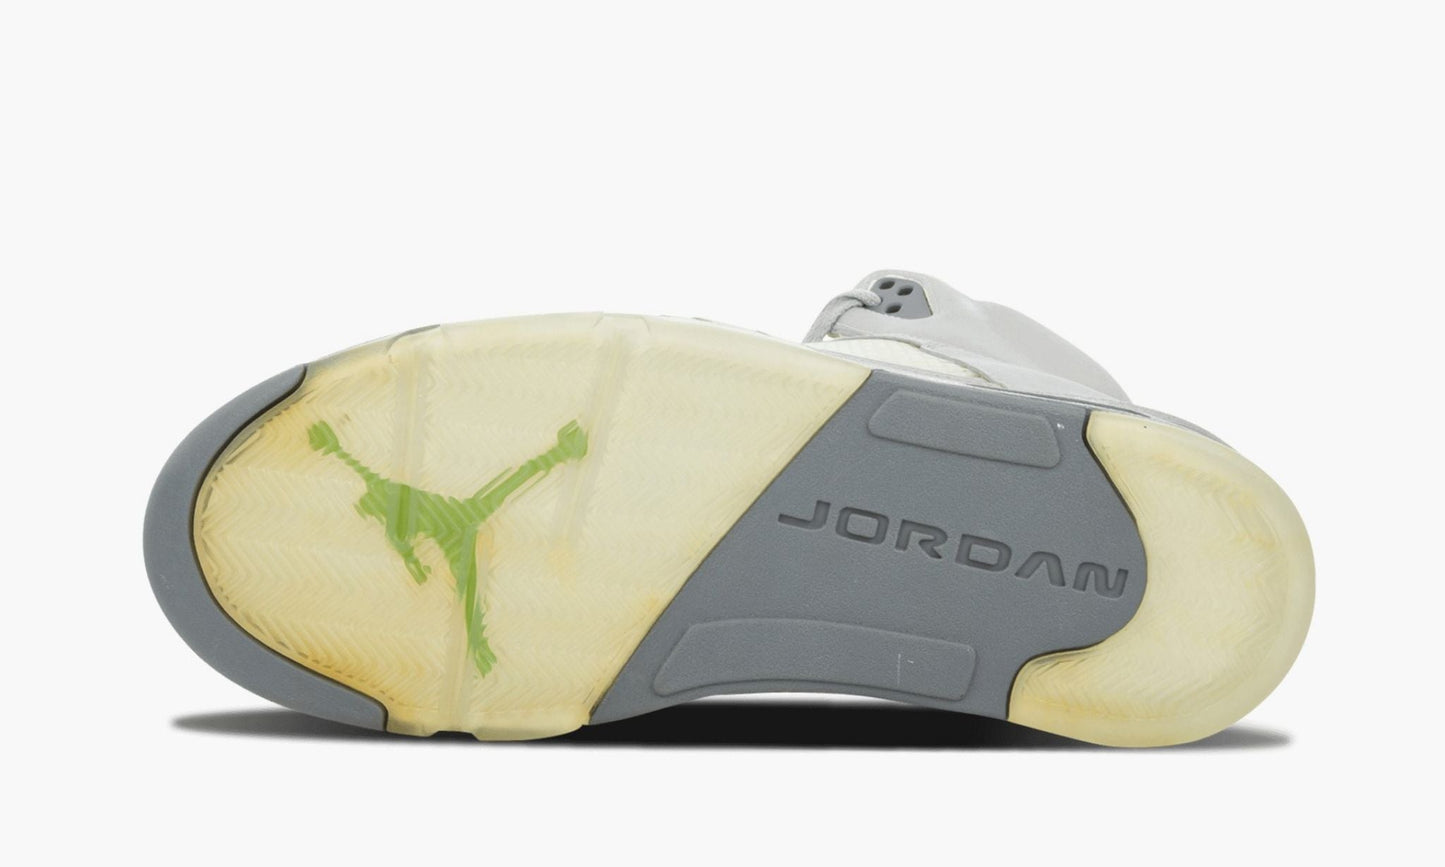 Air Jordan 5 Retro "Green Bean"